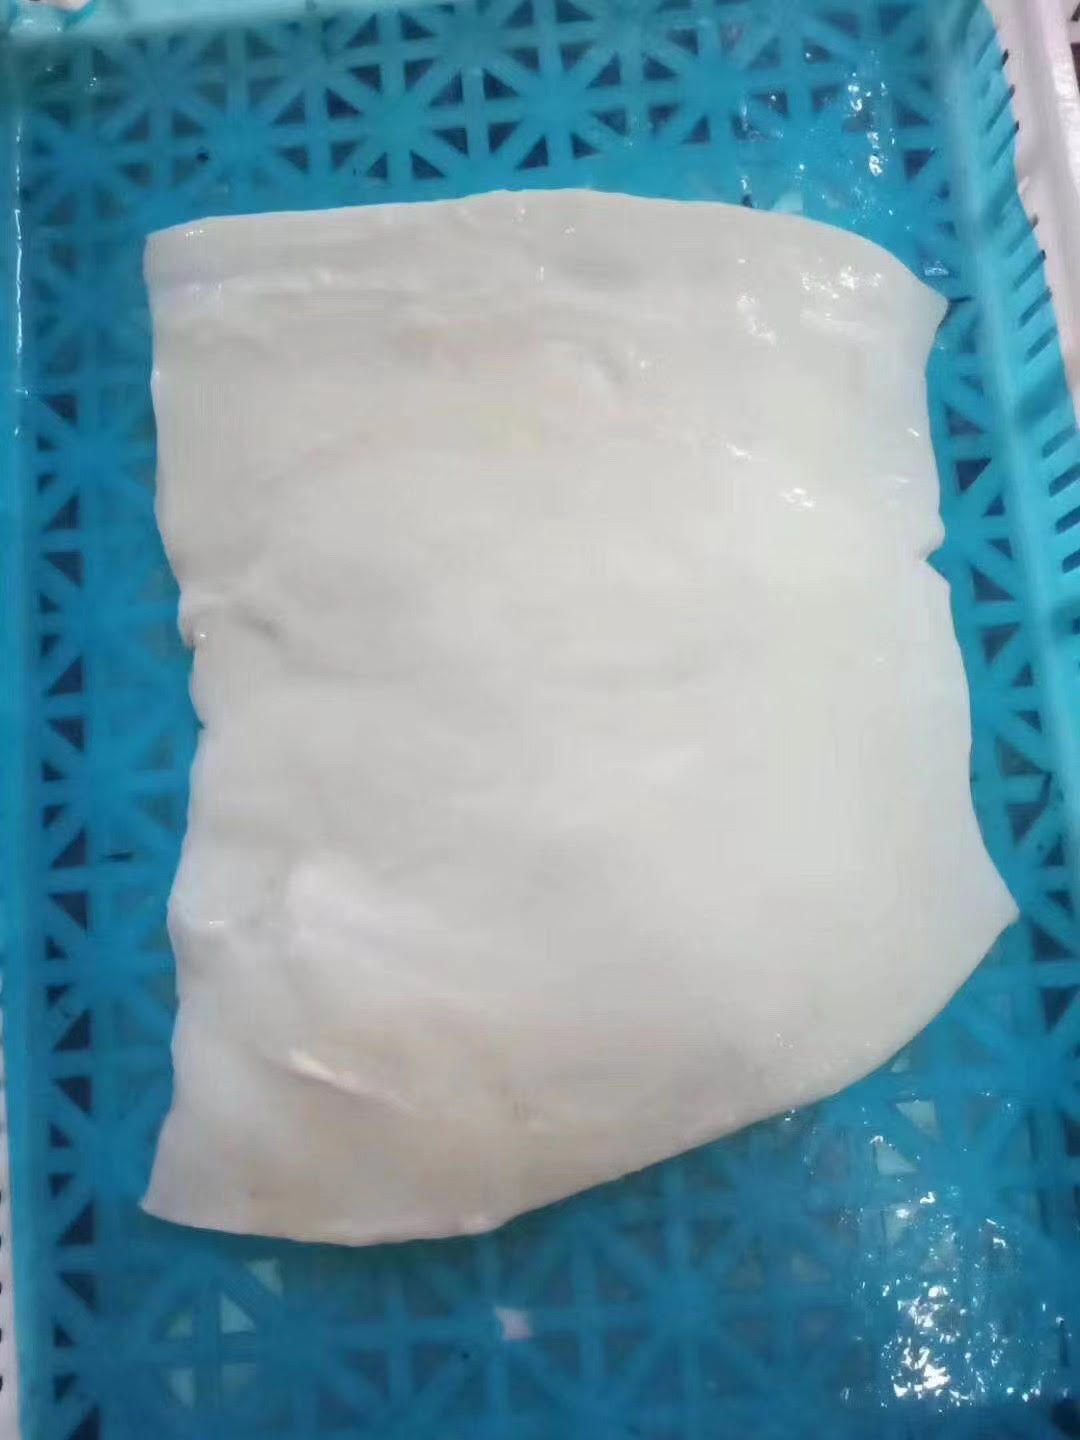 Product: Indian Ocean Squid Fillet